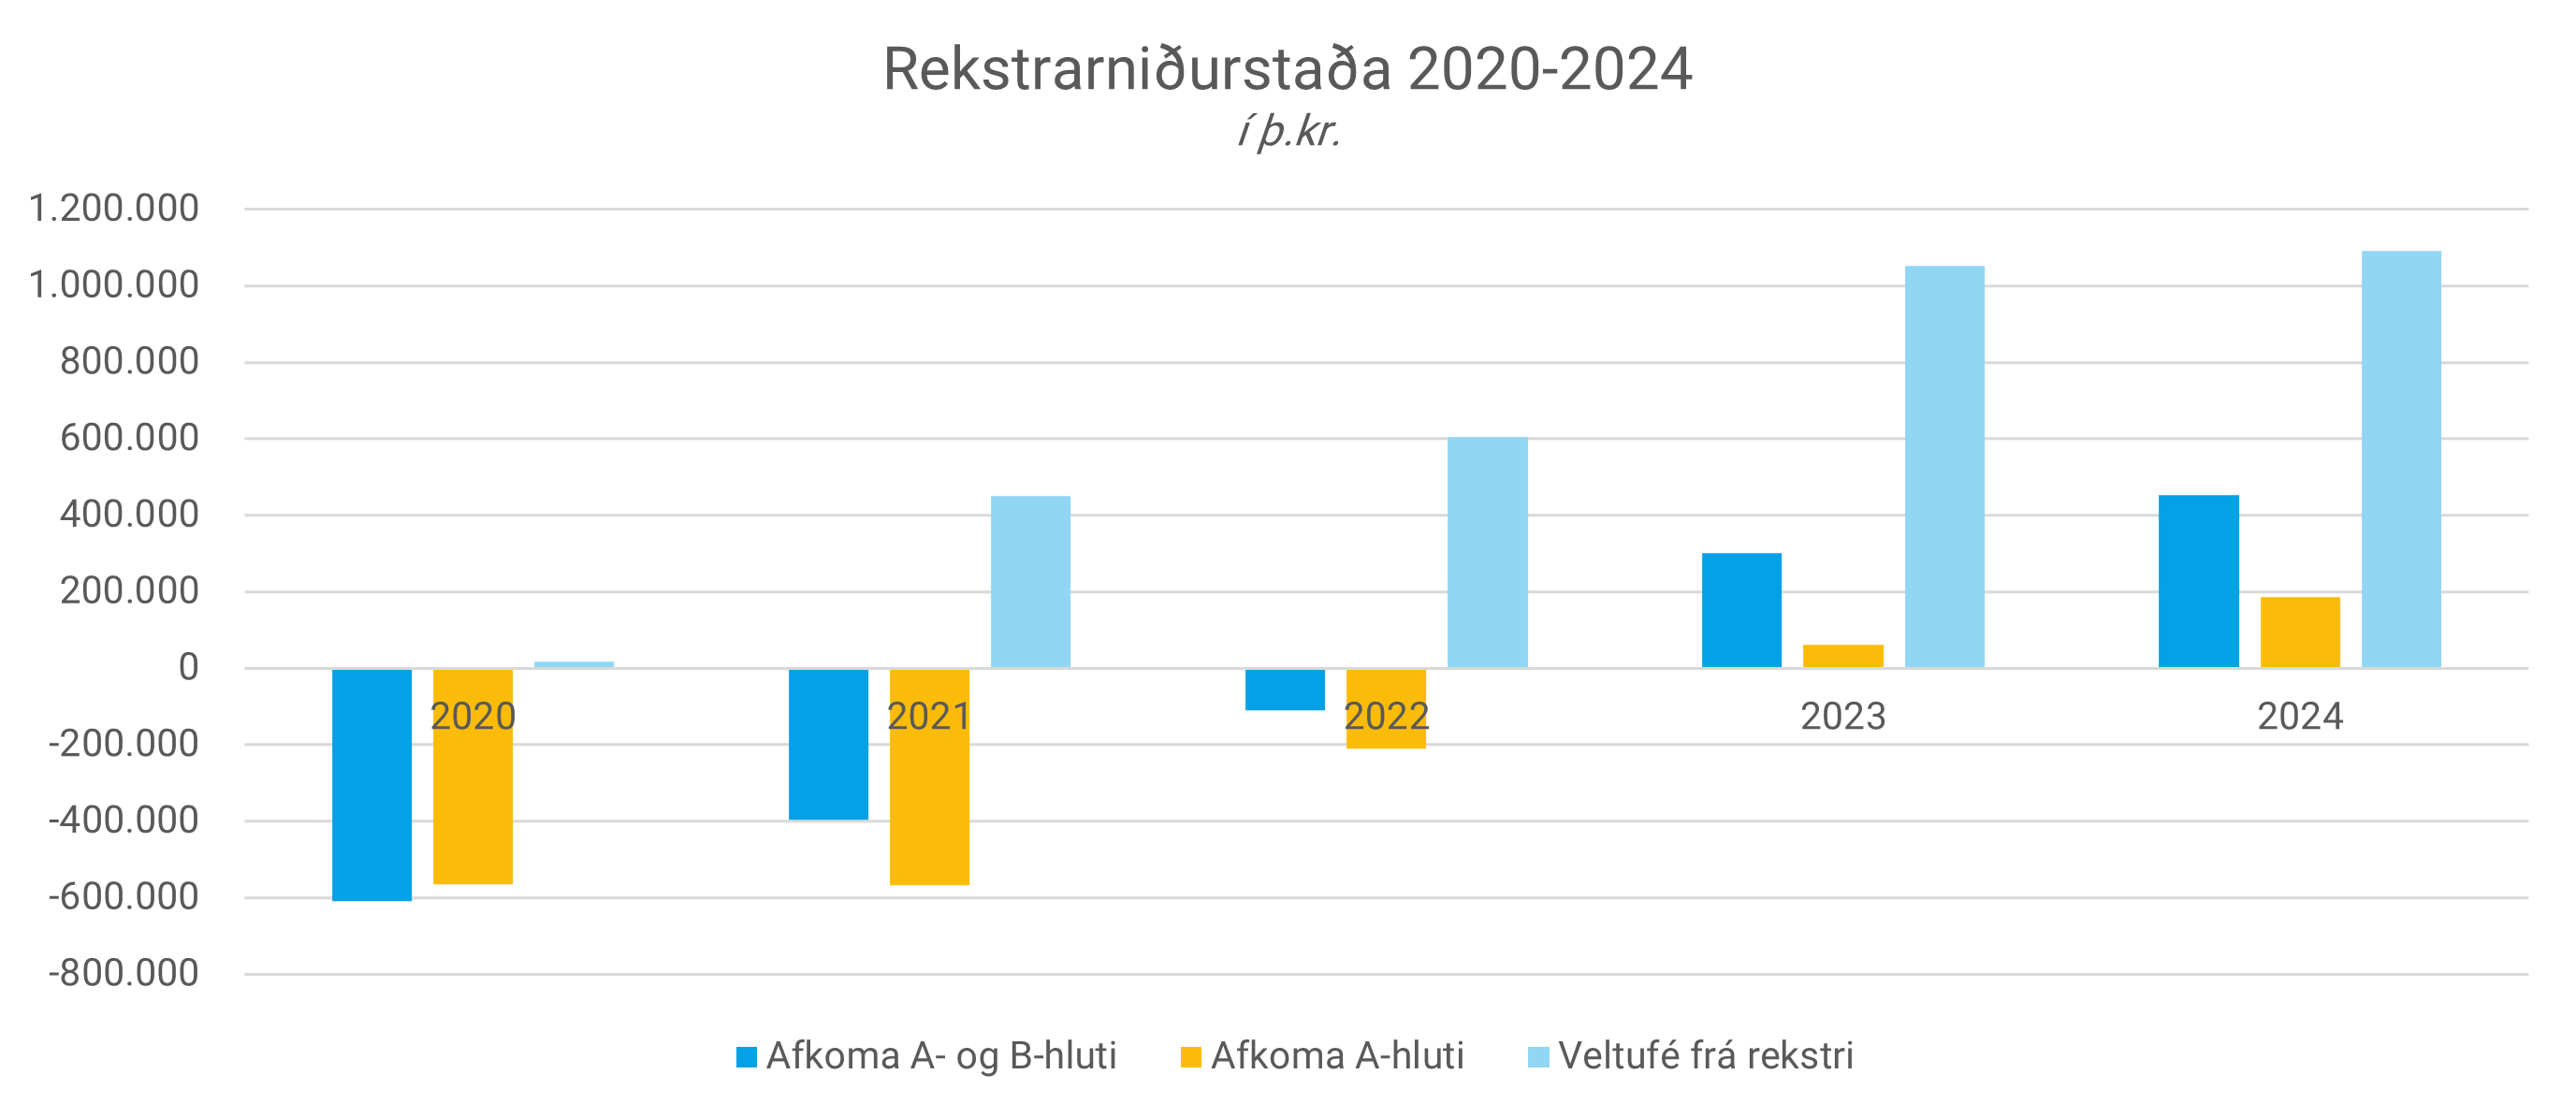 Stöplarit sem sýnir rekstrarniðurstöðu áranna 2020-2024